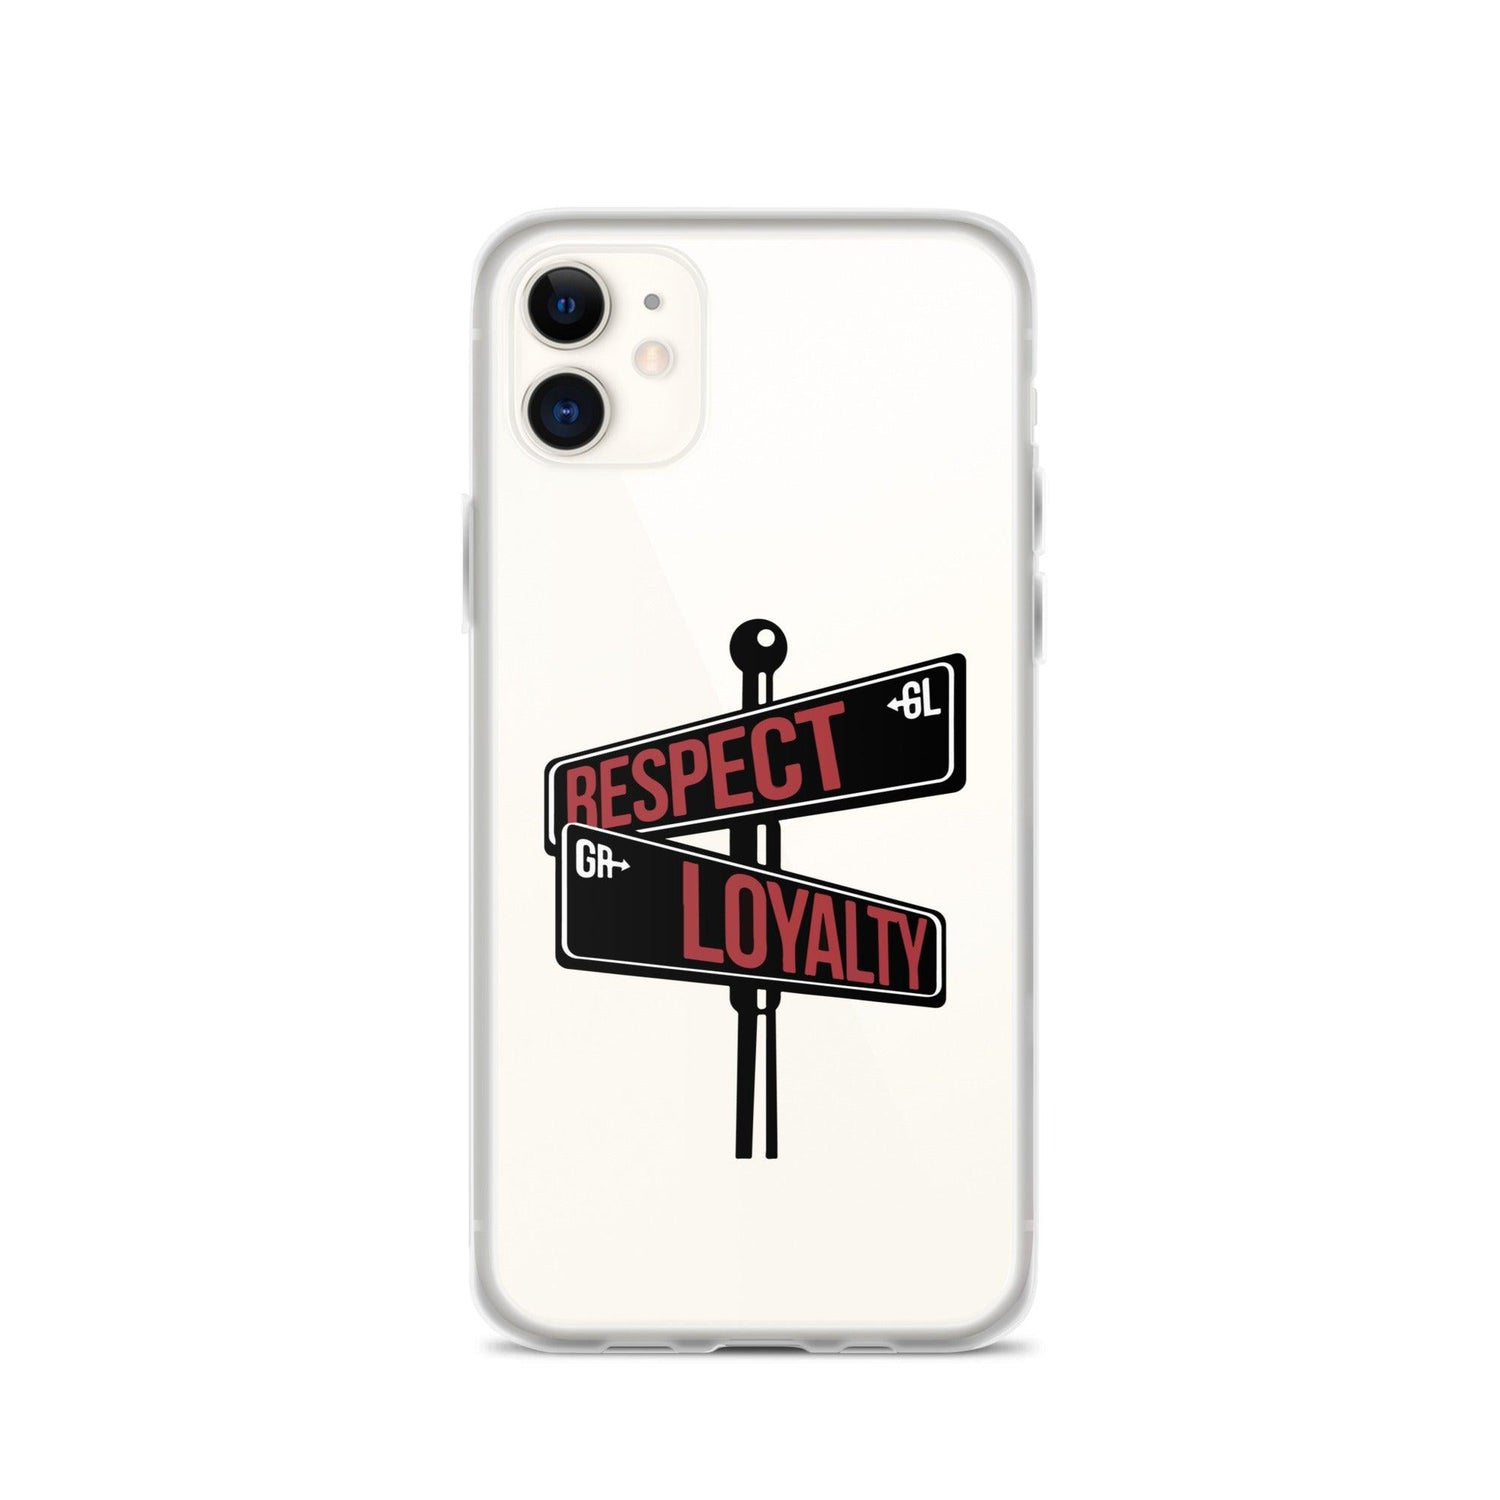 Kesean Carter "Signature" iPhone Case - Fan Arch